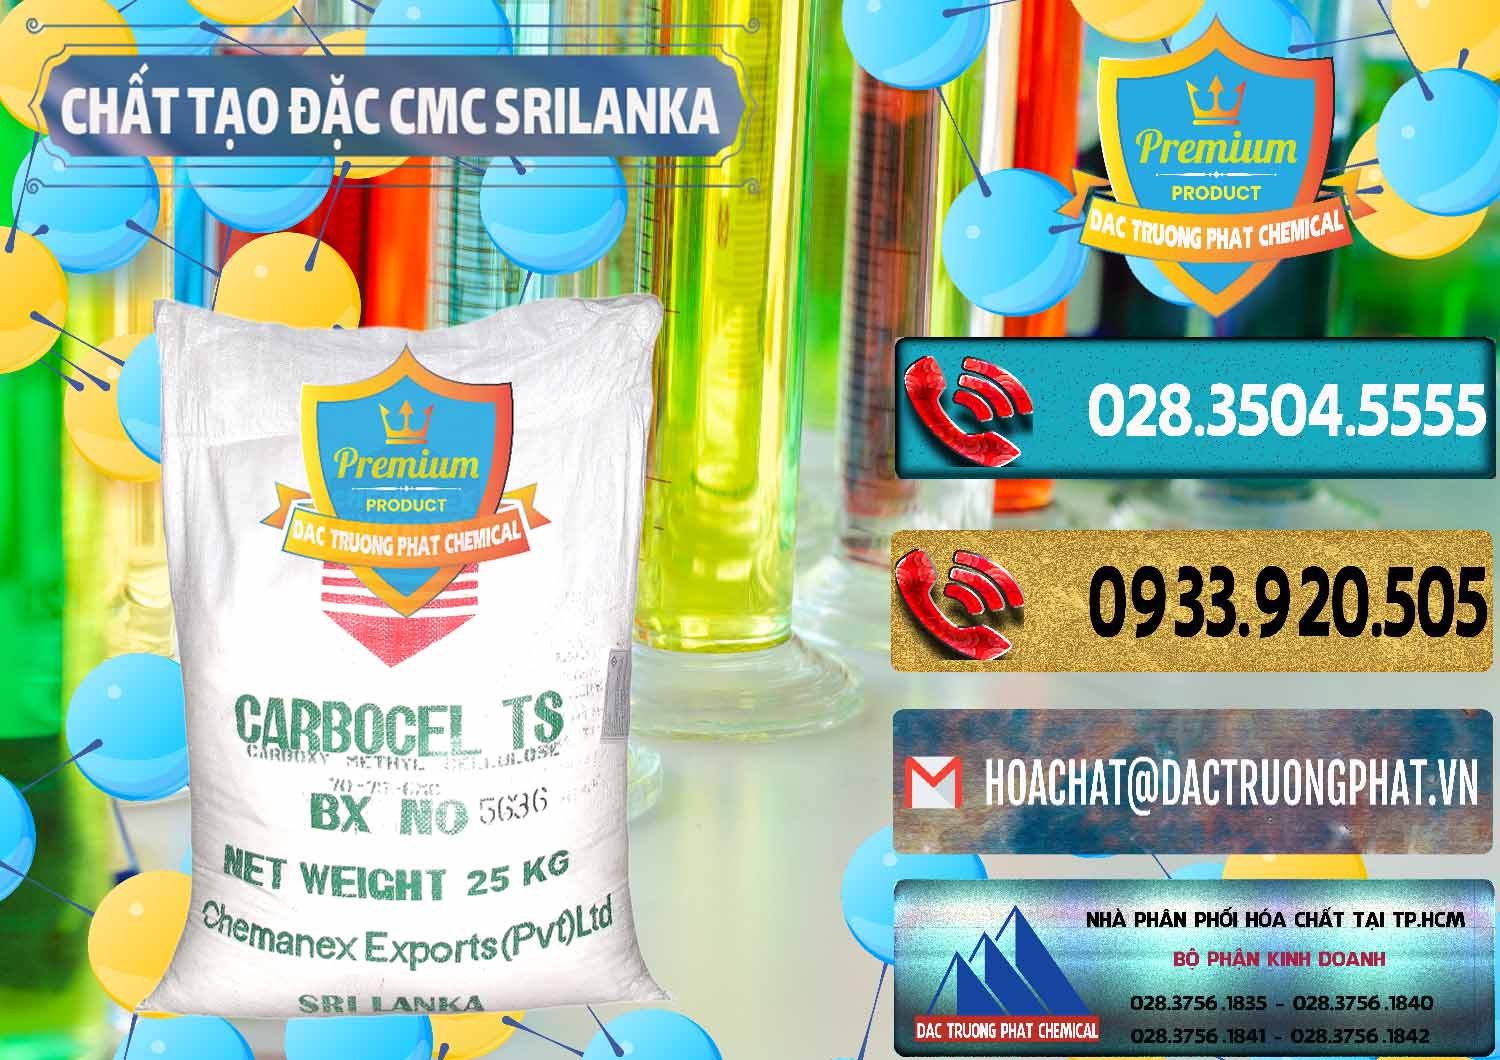 Nơi bán & cung cấp Chất Tạo Đặc CMC - Carboxyl Methyl Cellulose Srilanka - 0045 - Đơn vị chuyên cung cấp _ bán hóa chất tại TP.HCM - hoachatdetnhuom.com